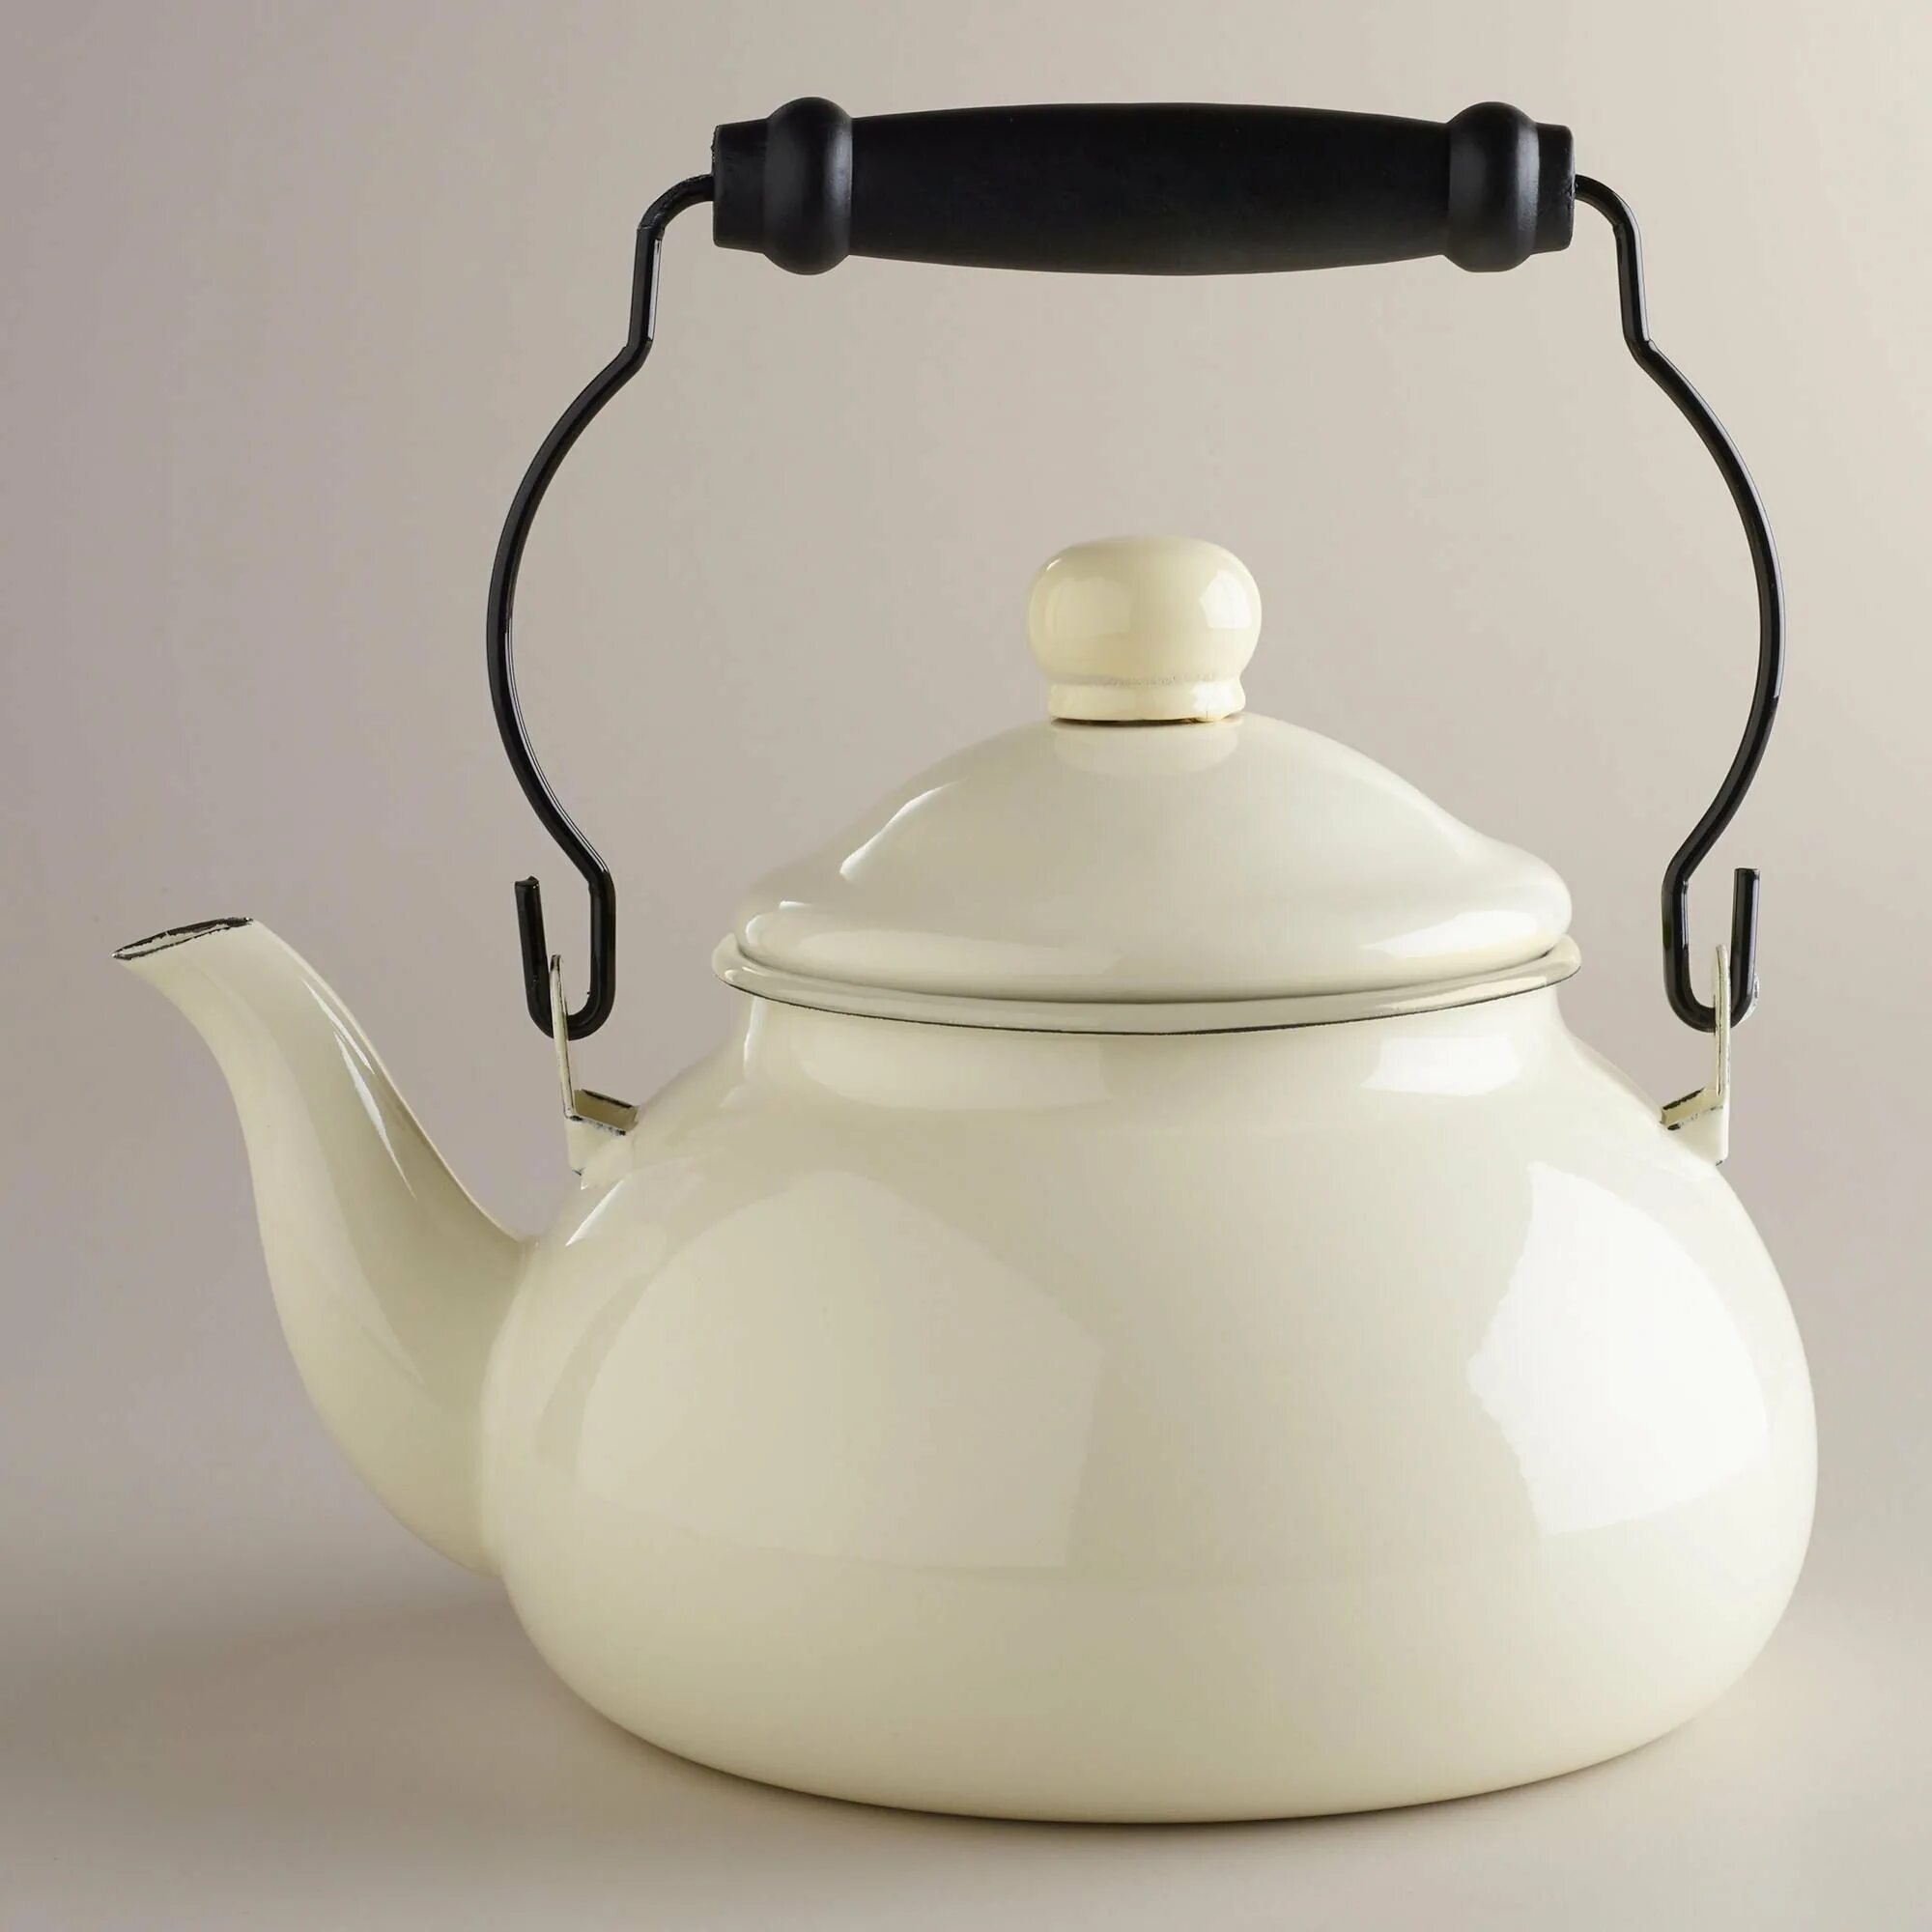 Купить ретро чайник. Чайник Vintage-Style kettle. Чайник kettle Classic Mr 1320. Чайник- 1903/2 Retro 105842. Чайник Кайзер ретро.